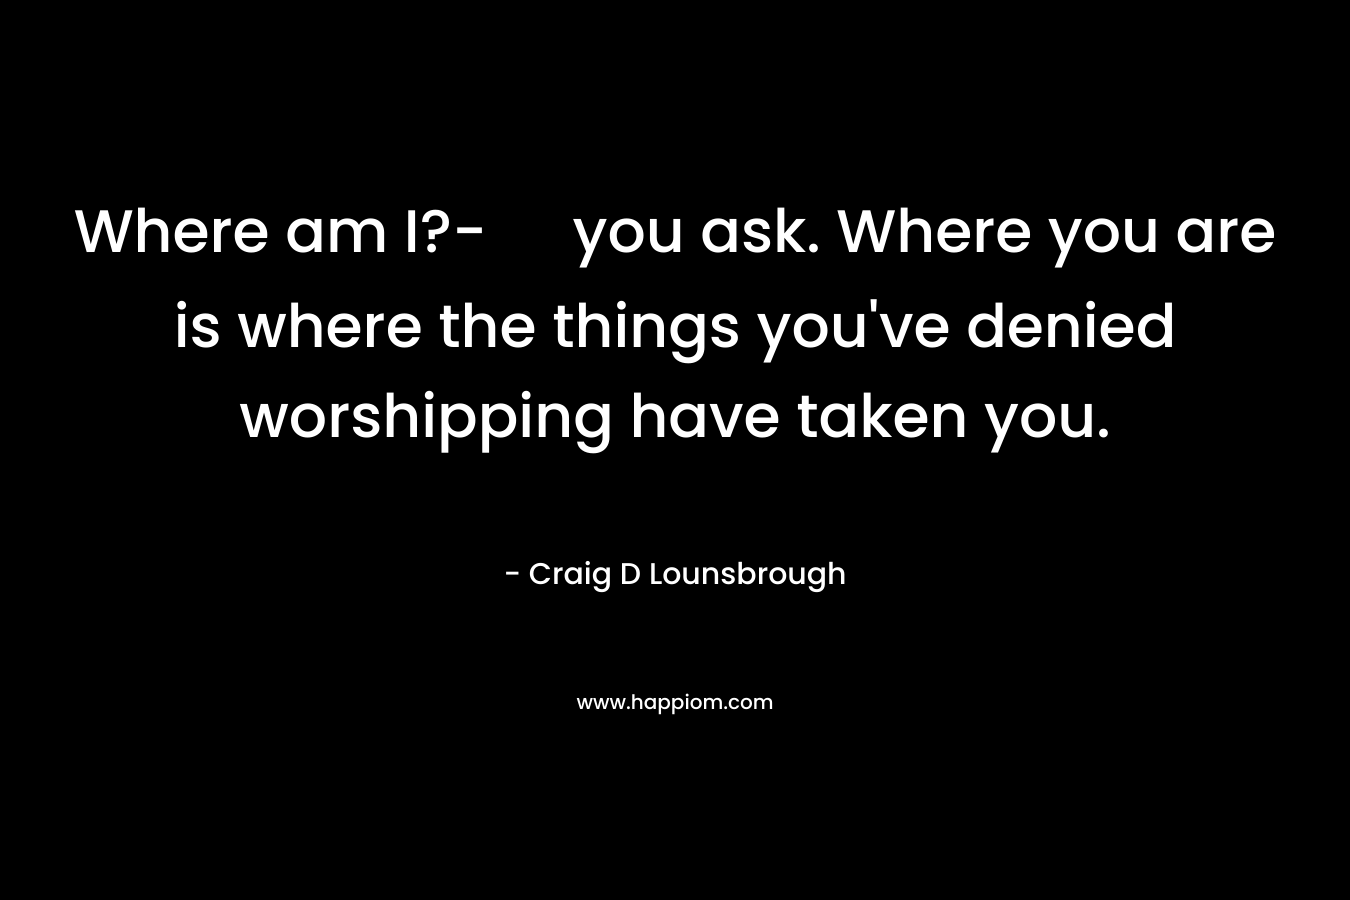 Where am I?- you ask. Where you are is where the things you've denied worshipping have taken you.